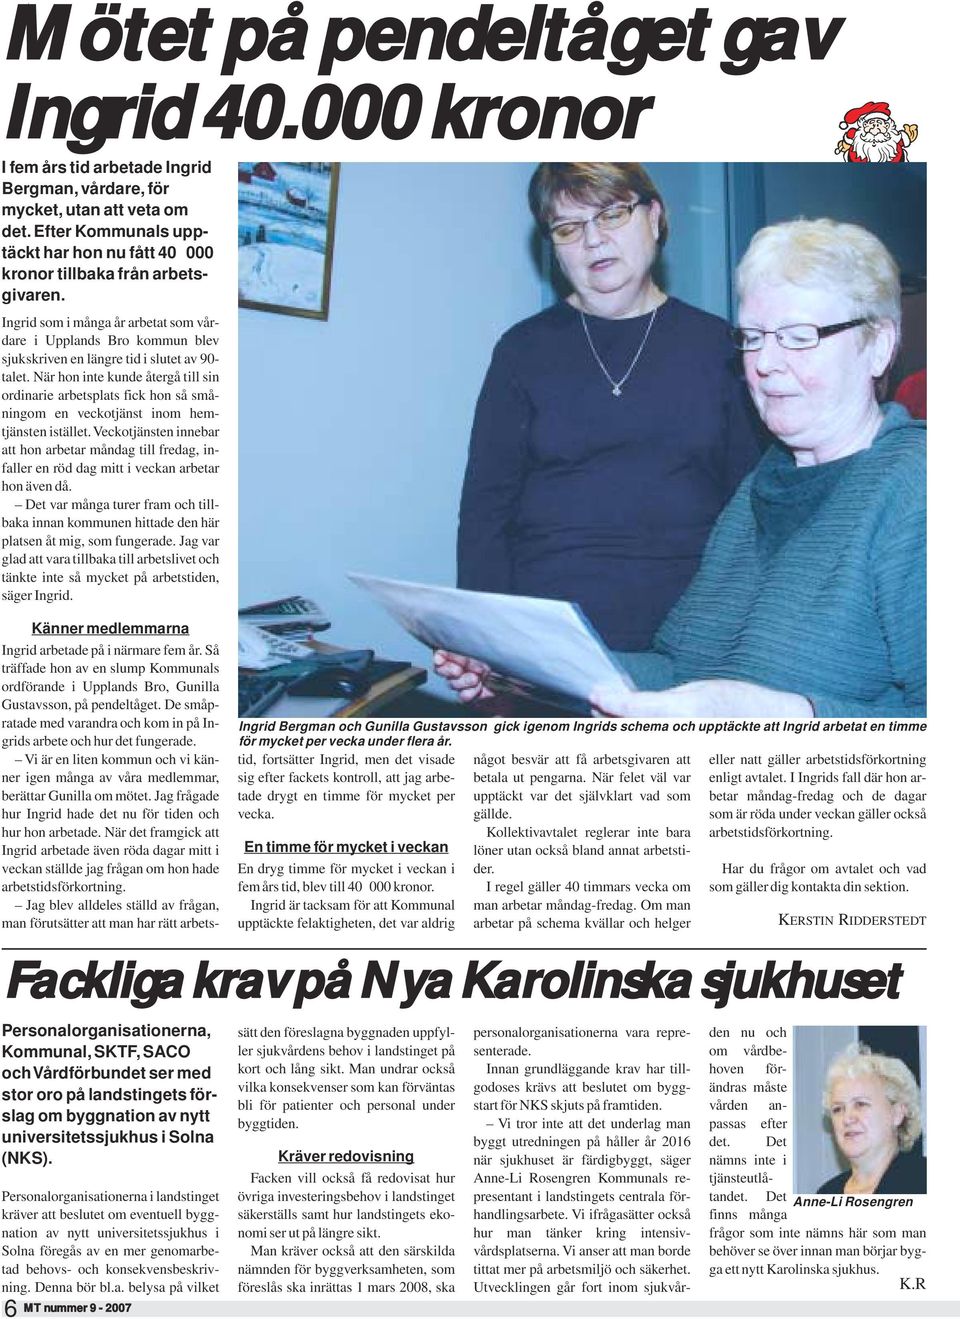 Ingrid som i många år arbetat som vårdare i Upplands Bro kommun blev sjukskriven en längre tid i slutet av 90- talet.